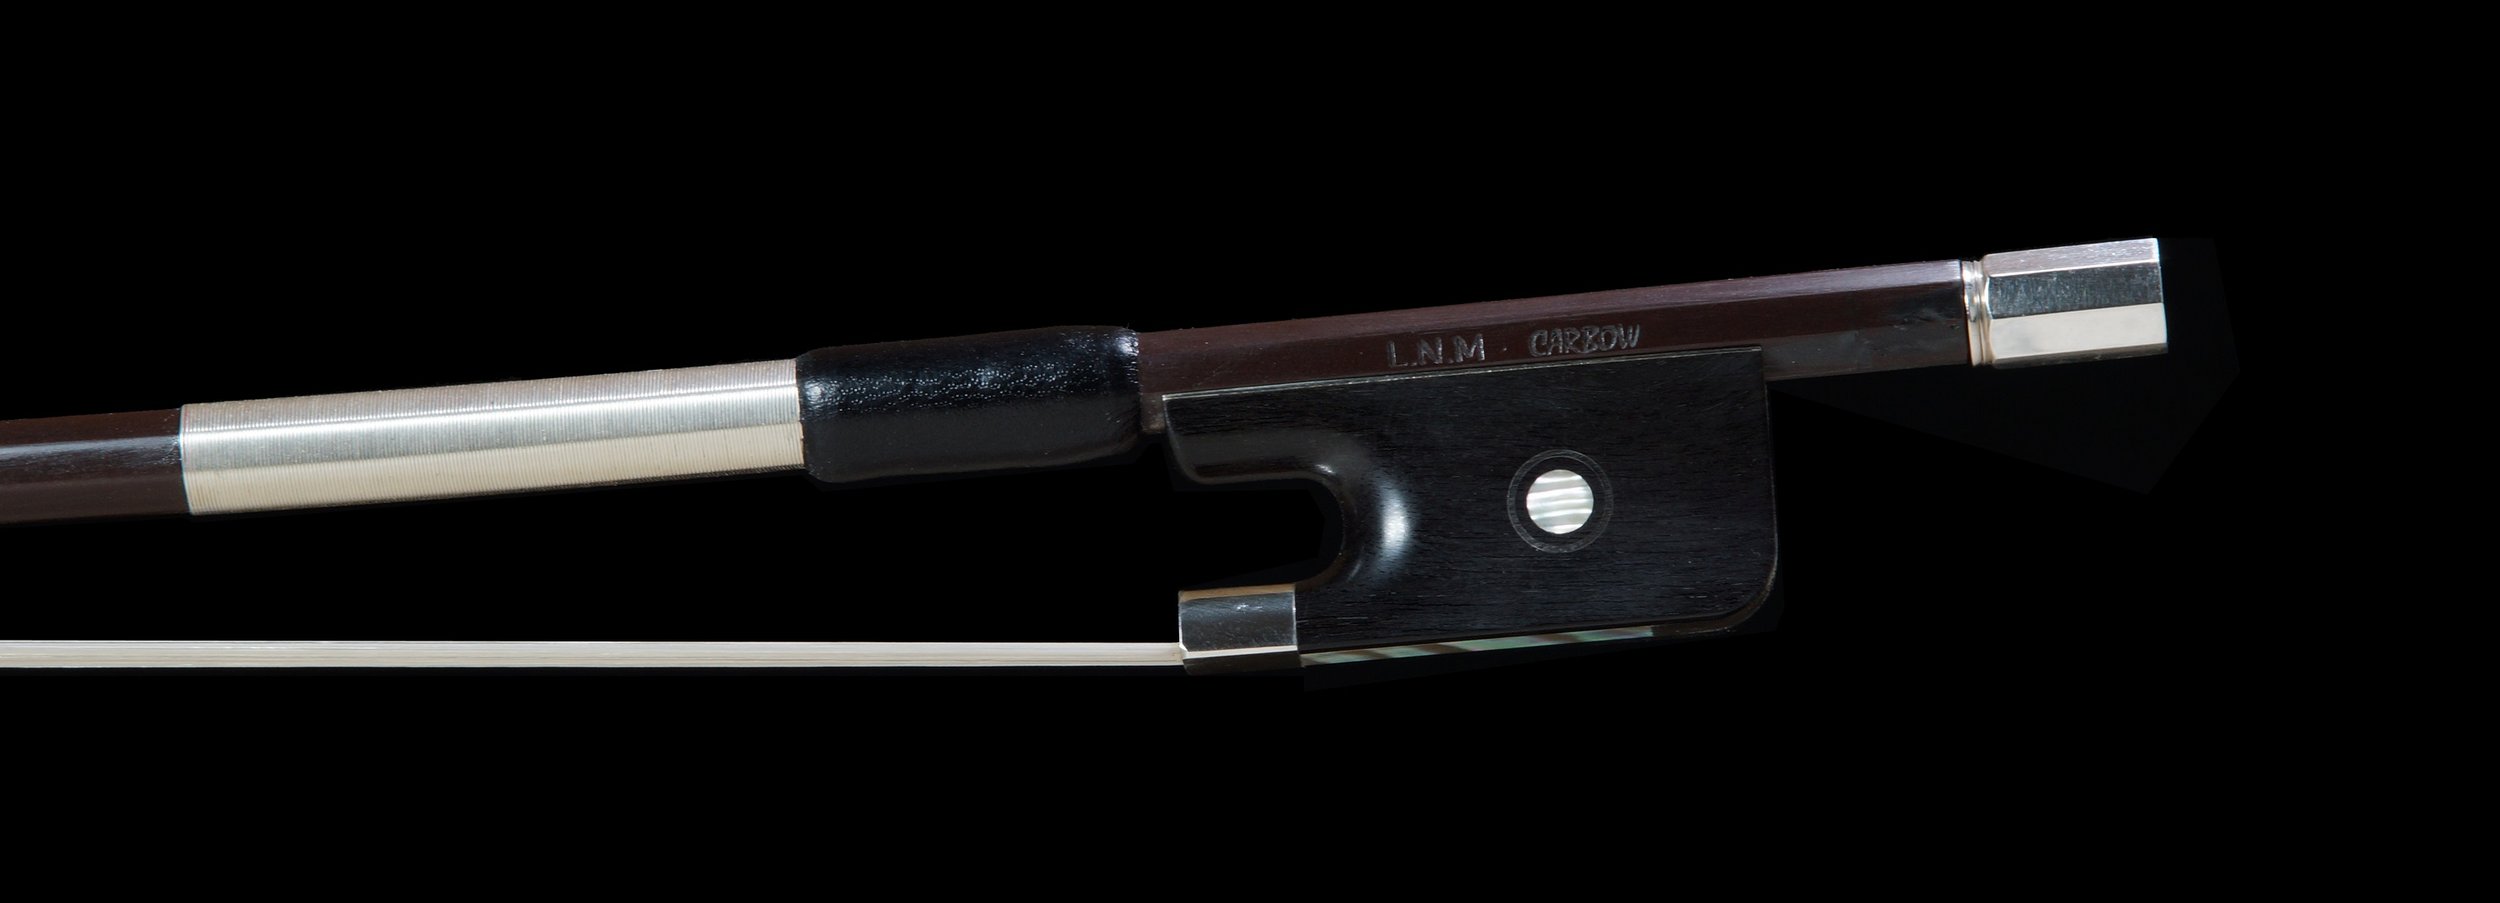 Ceci est un archet de violon avec une baguette brun foncé et une mèche de crin blanc, contre un fond noir.